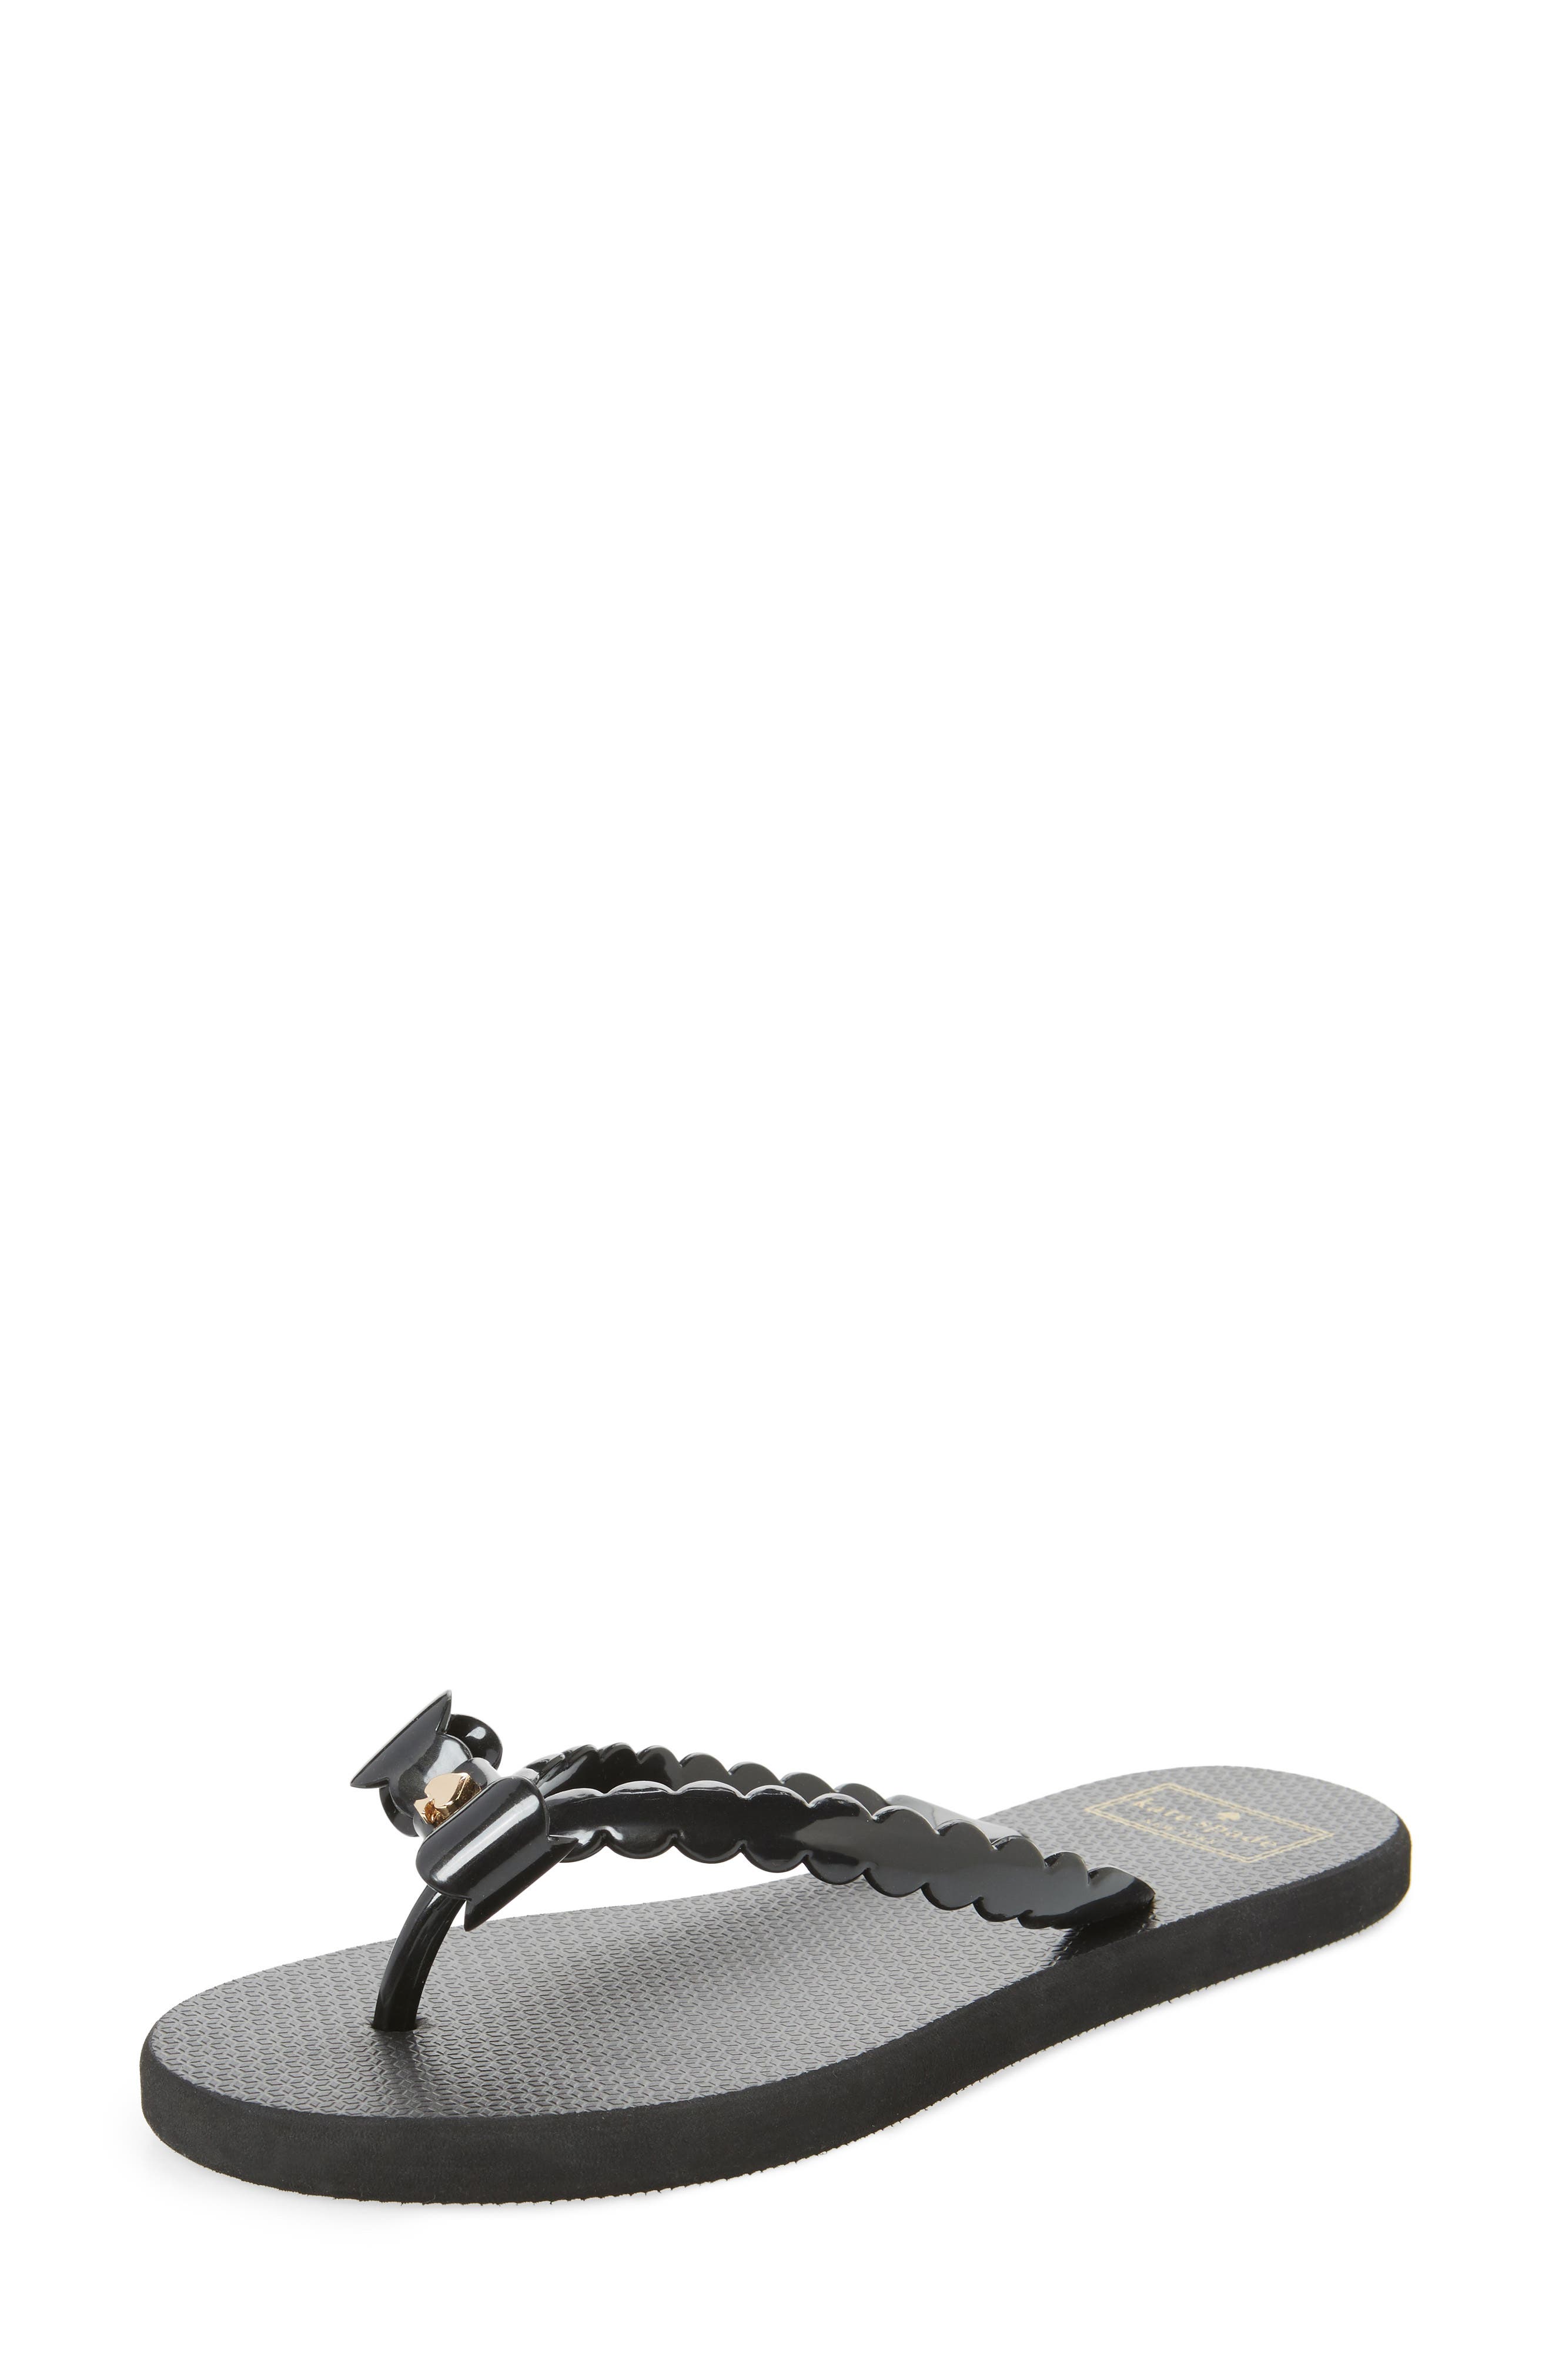 birkenstock clogs with heel strap